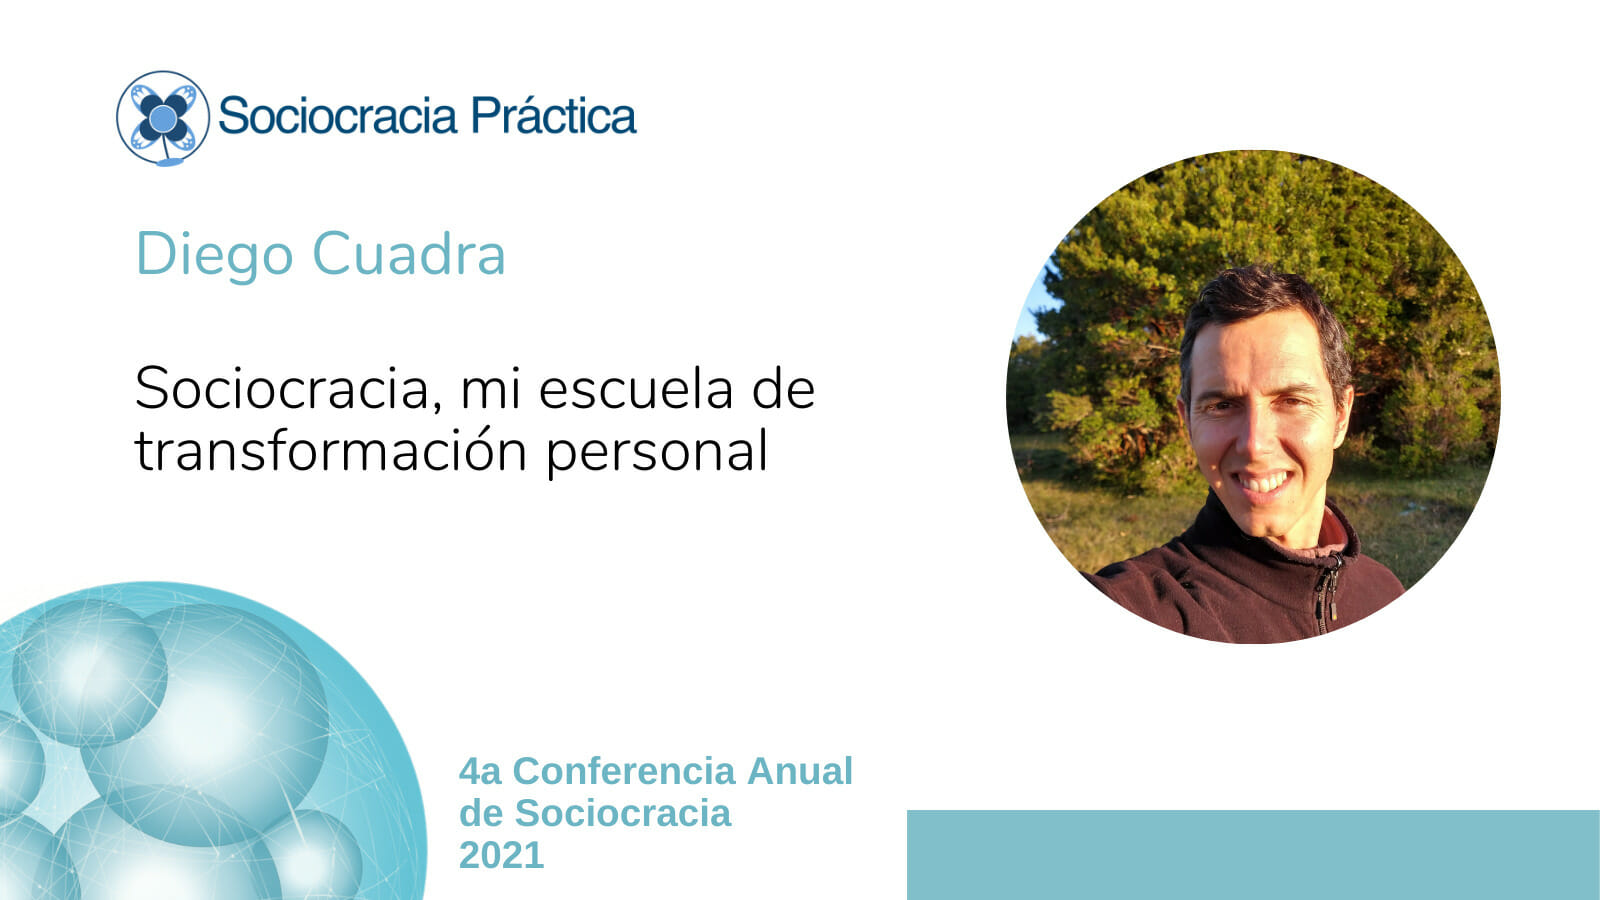 Sociocracia, mi escuela de transformación personal (Diego Cuadra)